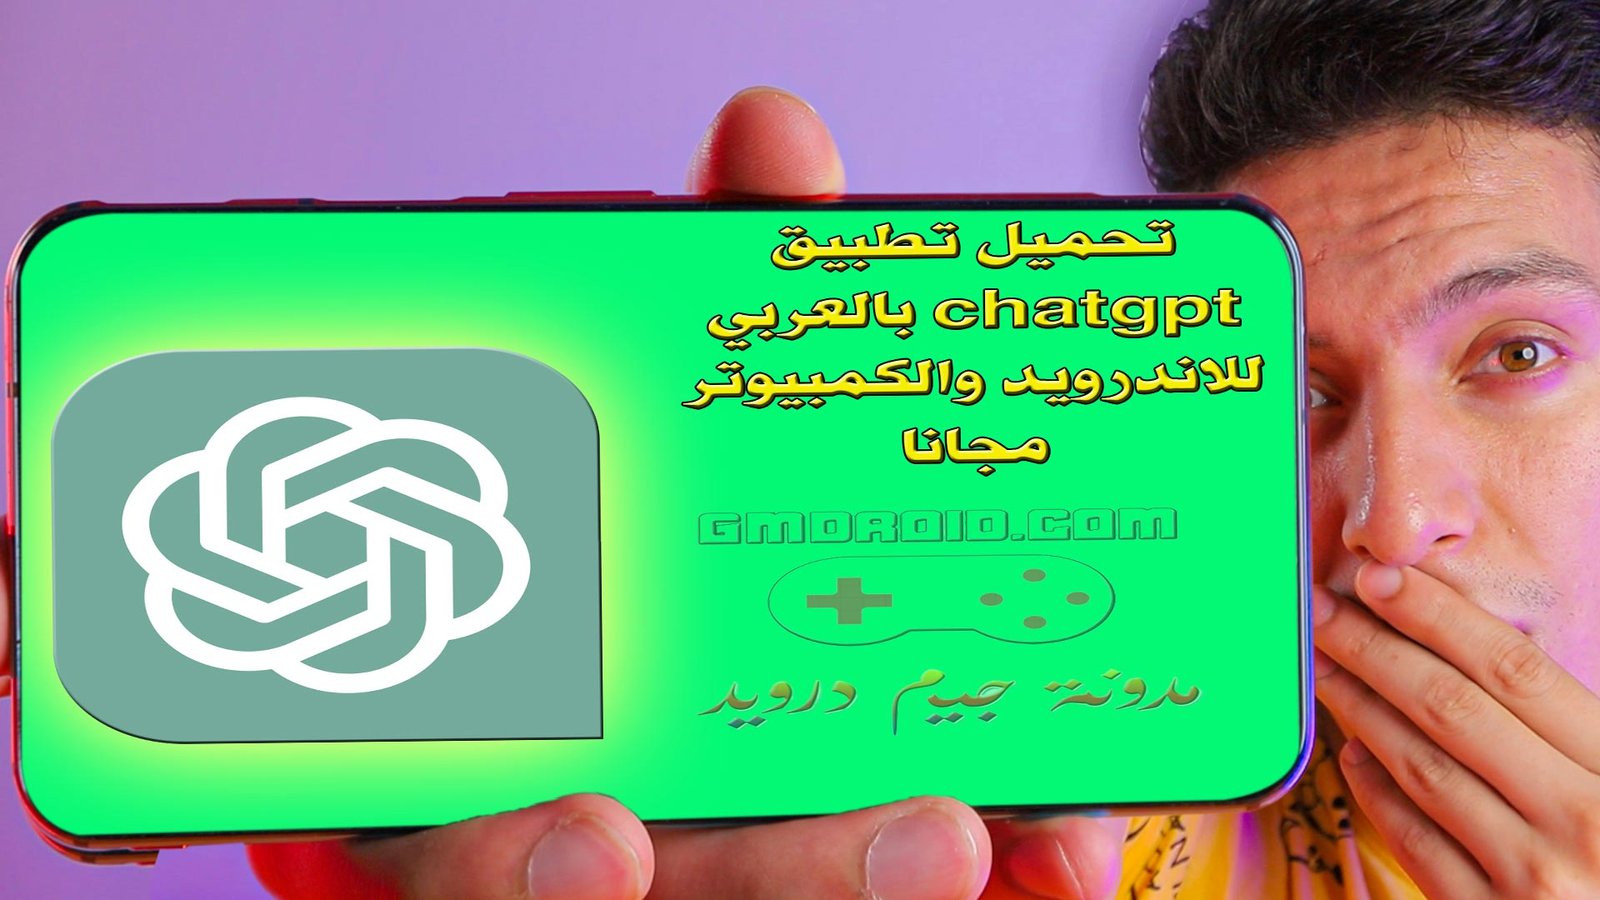 تحميل تطبيق chatgpt بالعربي للاندرويد والكمبيوتر مجانا - تنزيل شات جي بي بالعربي